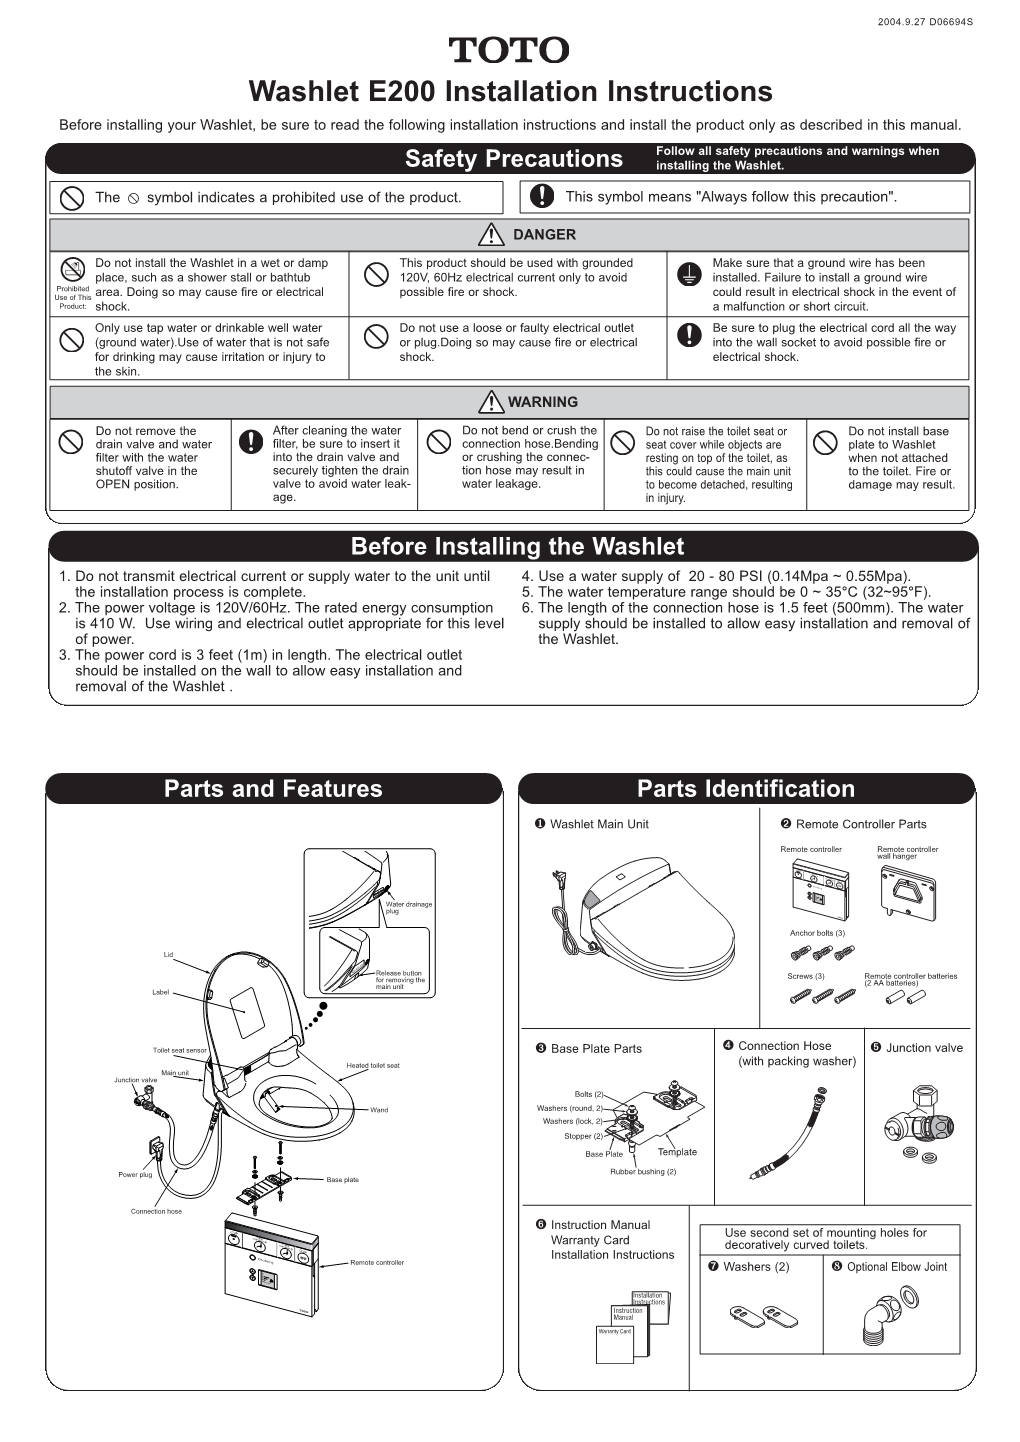 Washlet E200 Installation Instructions